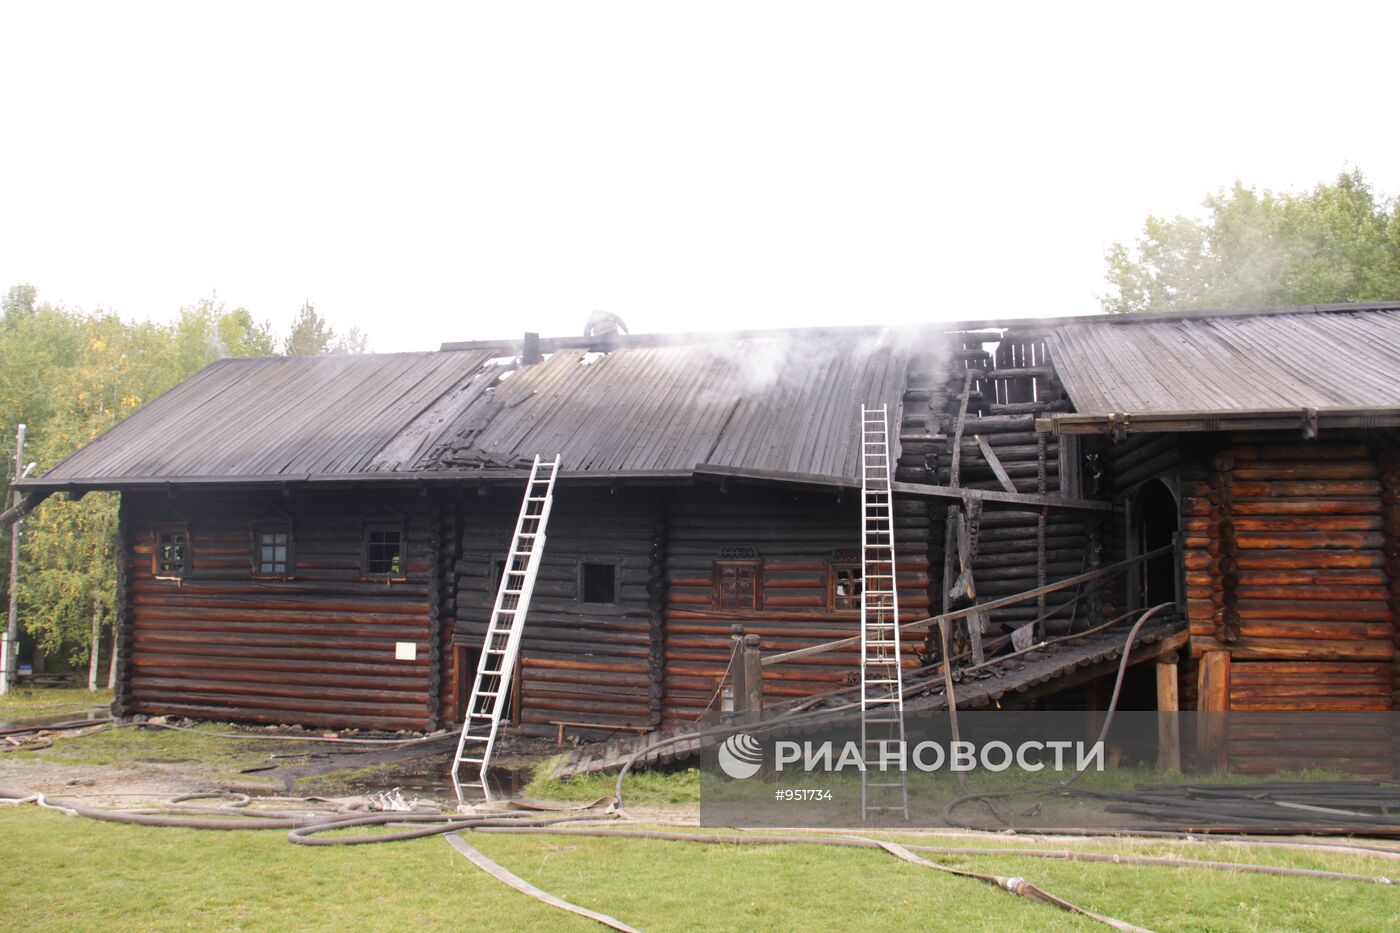 Пожар в музее "Малые Корелы" в Архангельской области